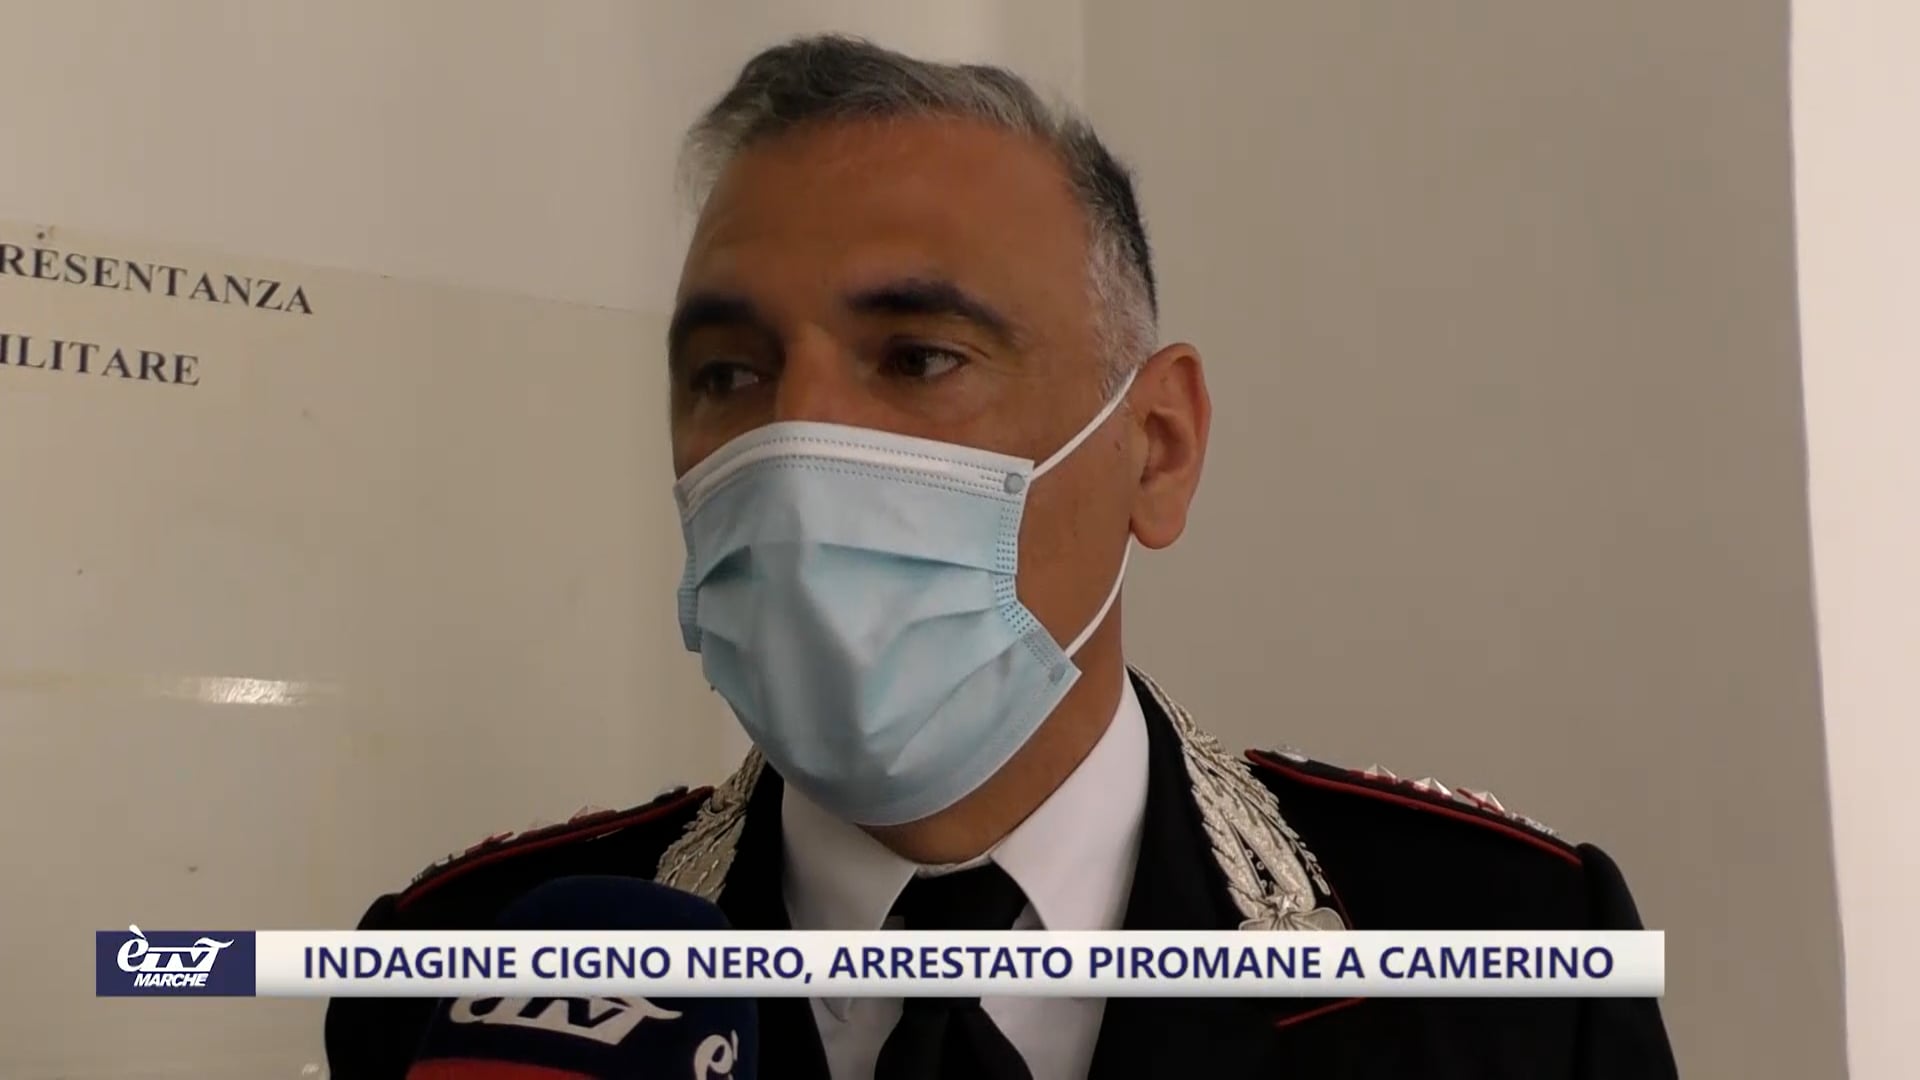 Indagine Cigno Nero, arrestato piromane a Camerino